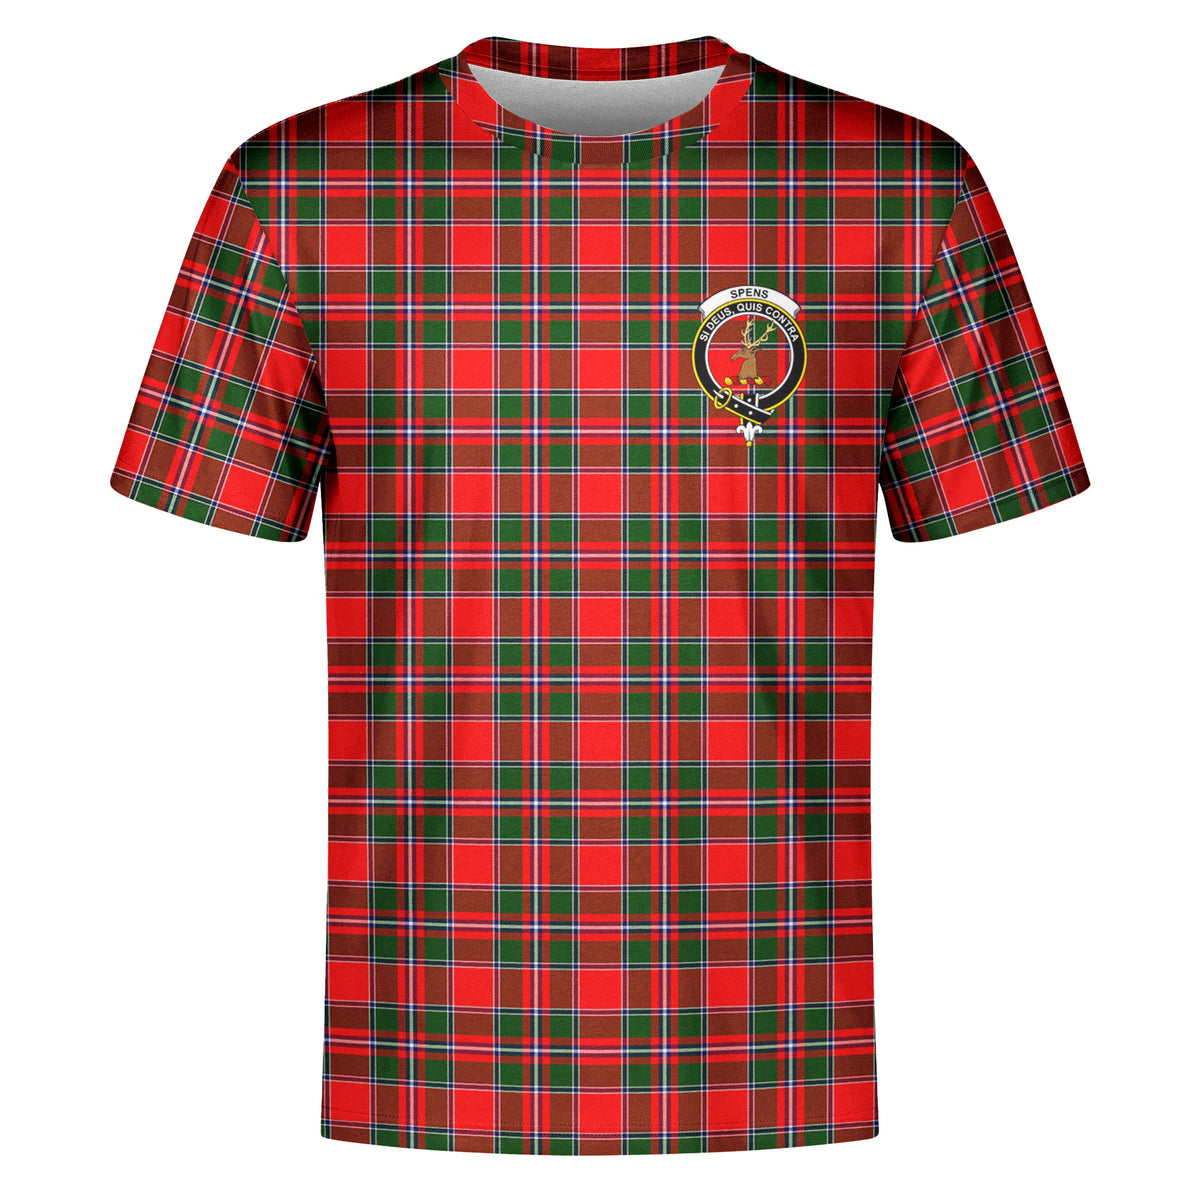 Spens (or Spence) Tartan Crest T-shirt